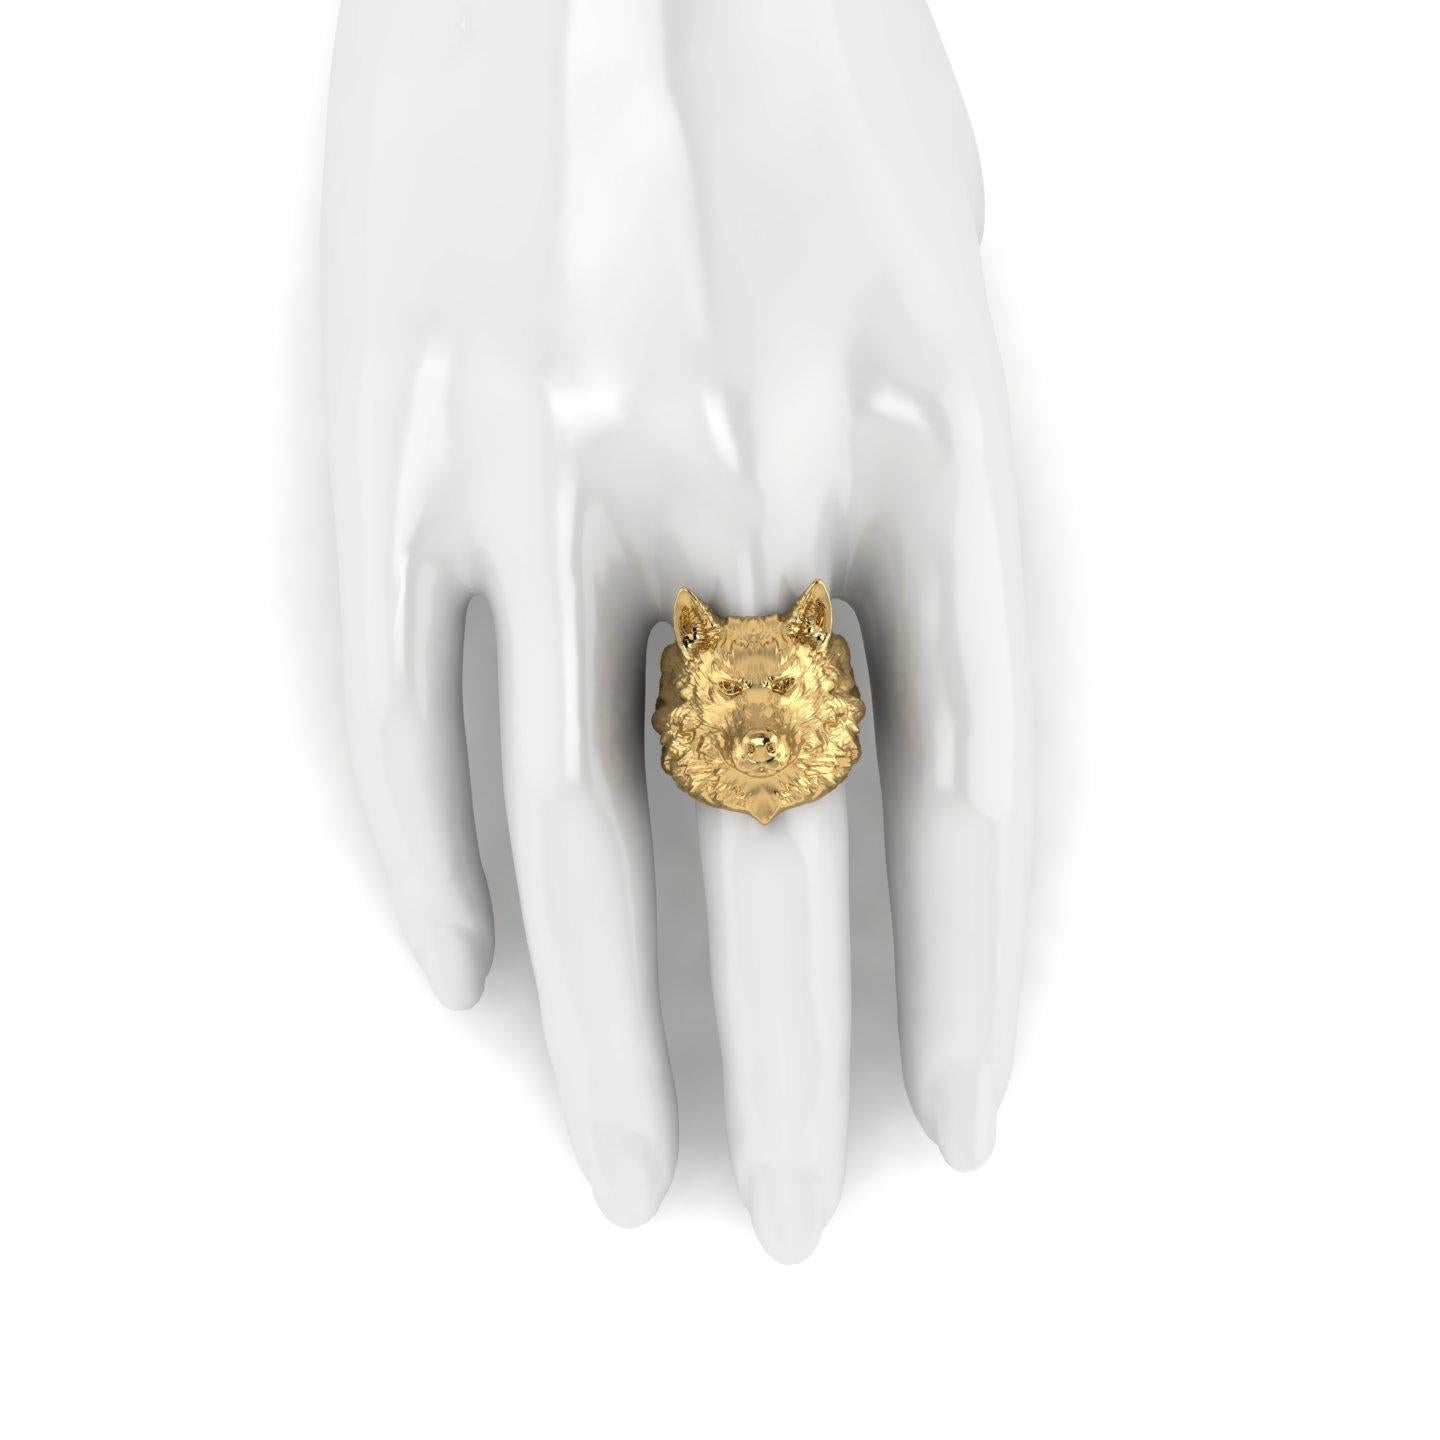 18k Solid Yellow Gold Wolf Ring ganz in 18k Solid Yellow Gold, keine Plattierungen gemacht,  detailliert, auf Bestellung Ihrer Größe jedes Mal, wegen der Finger Größe passend Bedeutung.
Dies ist ein solides Stück 18k Gelbgold, mit seinem Gewicht,